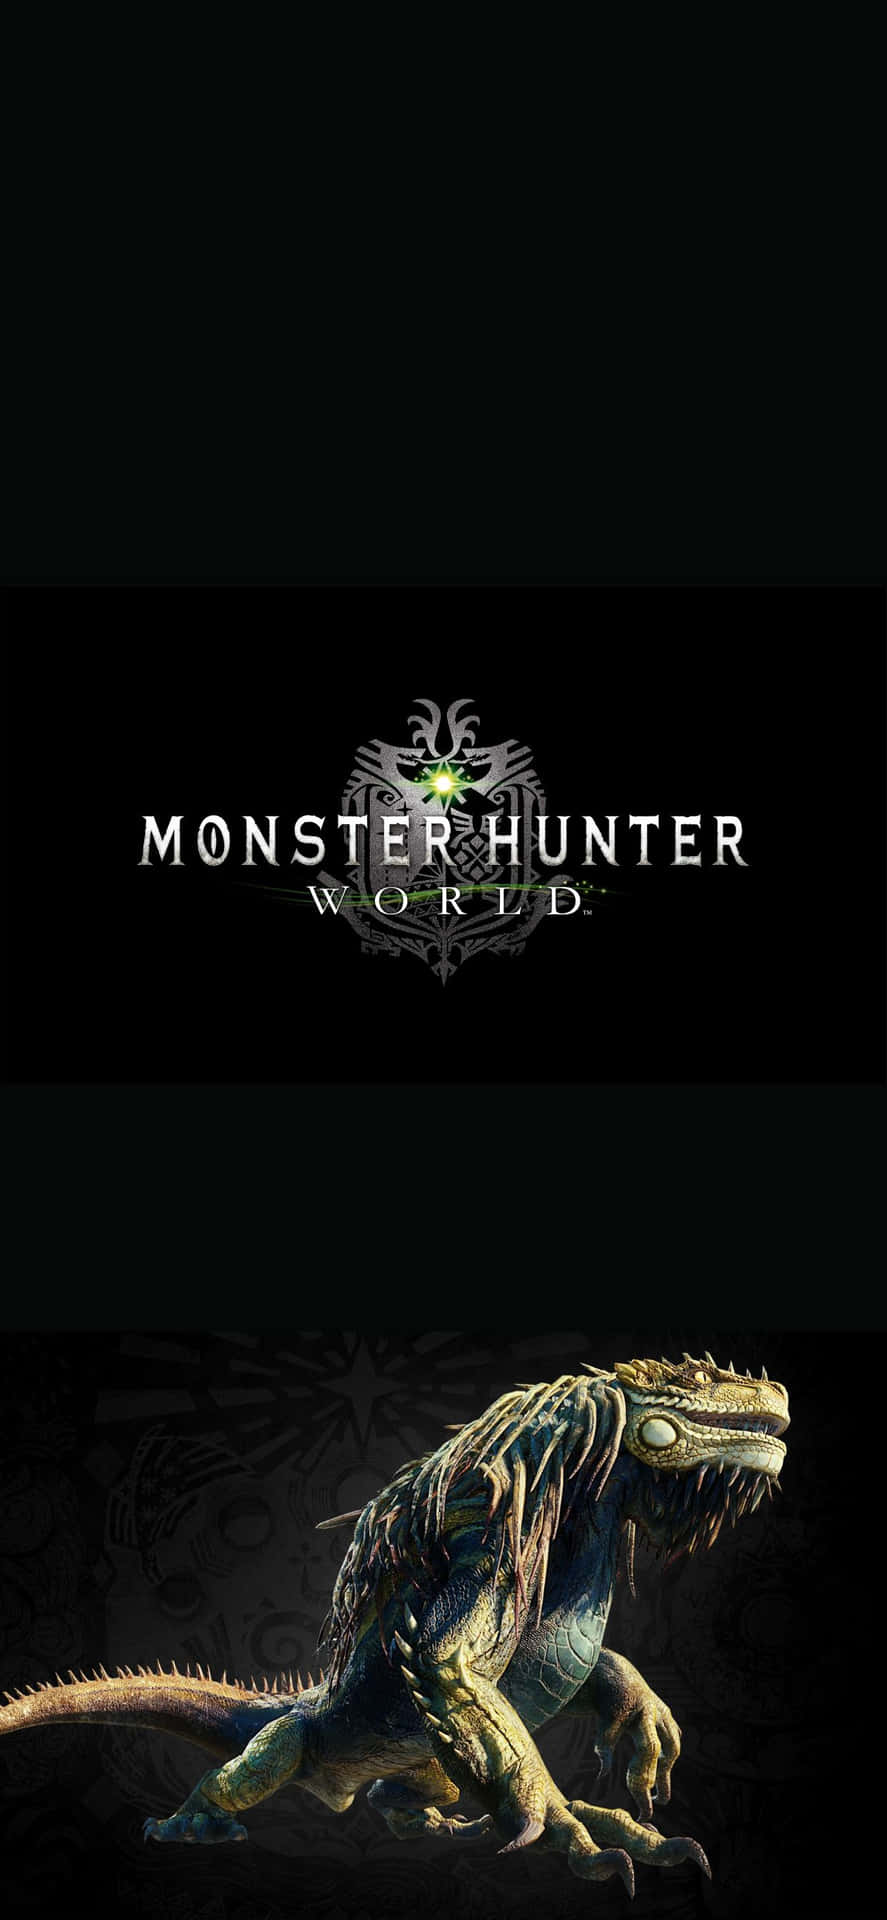 Iphonexs Max Bakgrundsbild Med Jagras Från Monster Hunter World